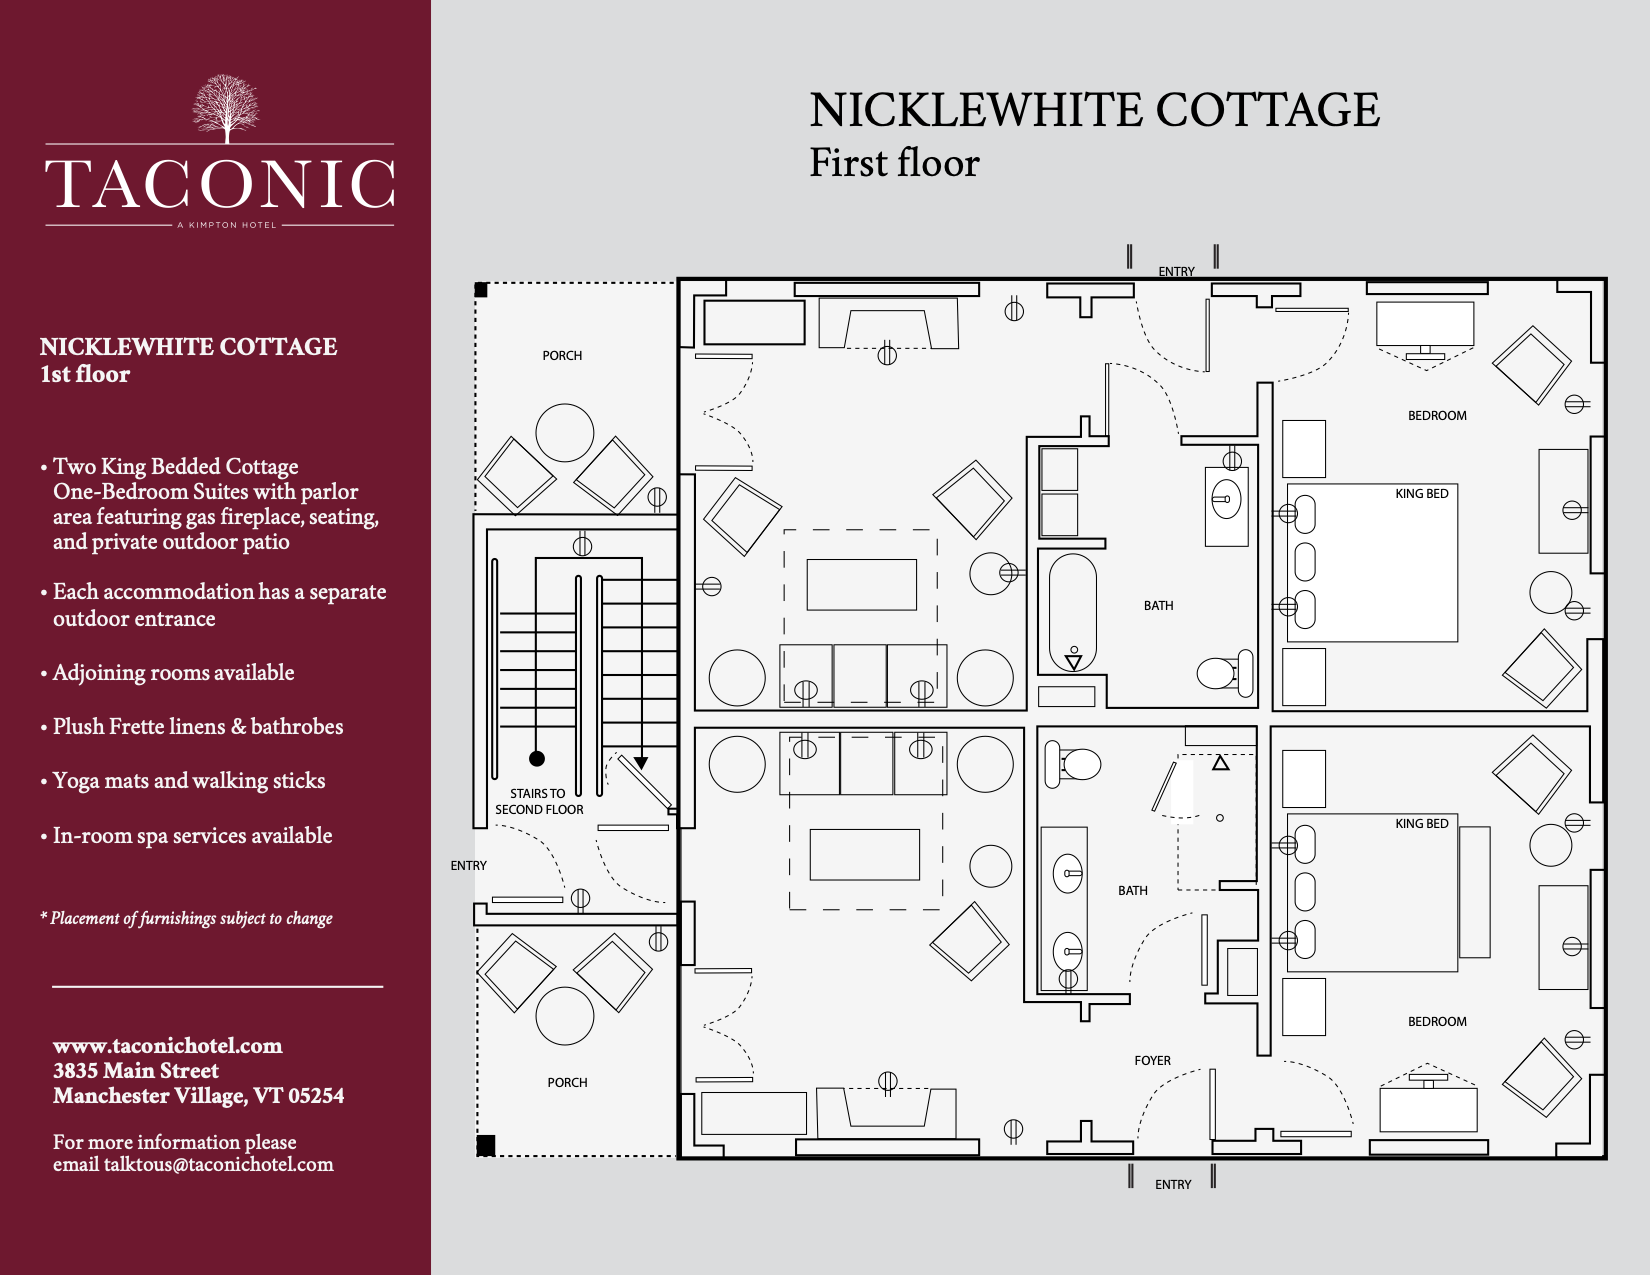 Nicklewhite Cottage Floorplan